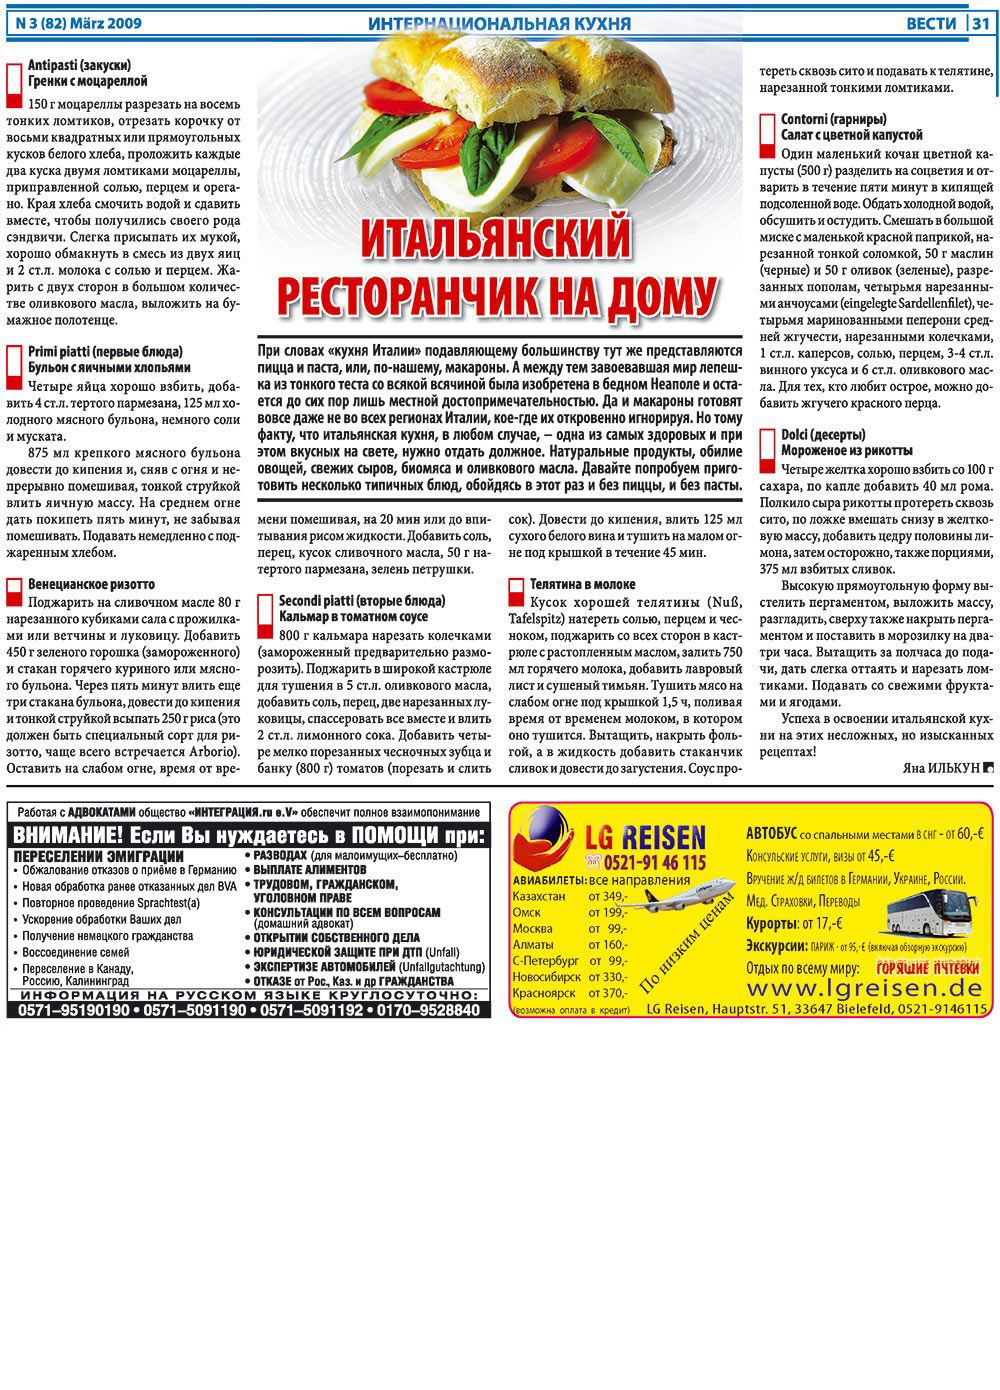 Вести, газета. 2009 №3 стр.31